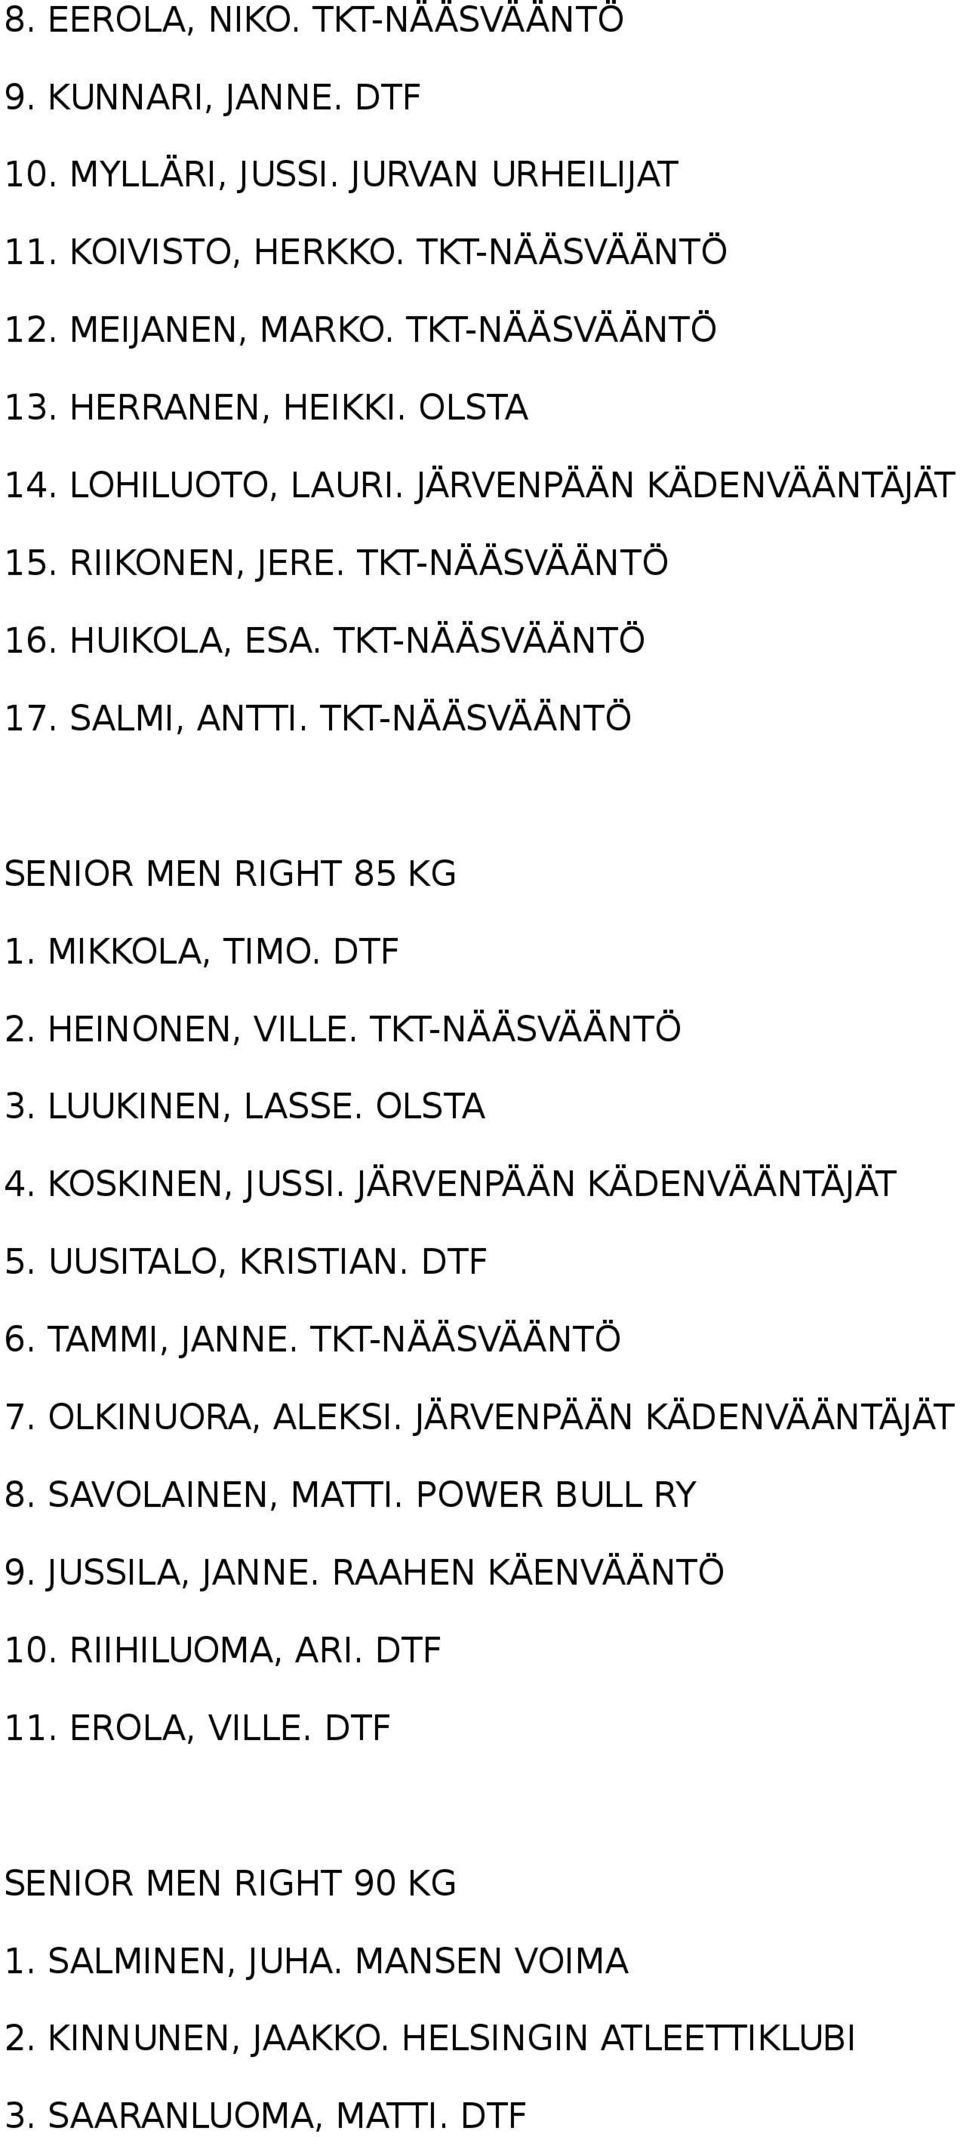 HEINONEN, VILLE. TKT-NÄÄSVÄÄNTÖ 3. LUUKINEN, LASSE. OLSTA 4. KOSKINEN, JUSSI. JÄRVENPÄÄN KÄDENVÄÄNTÄJÄT 5. UUSITALO, KRISTIAN. DTF 6. TAMMI, JANNE. TKT-NÄÄSVÄÄNTÖ 7. OLKINUORA, ALEKSI.